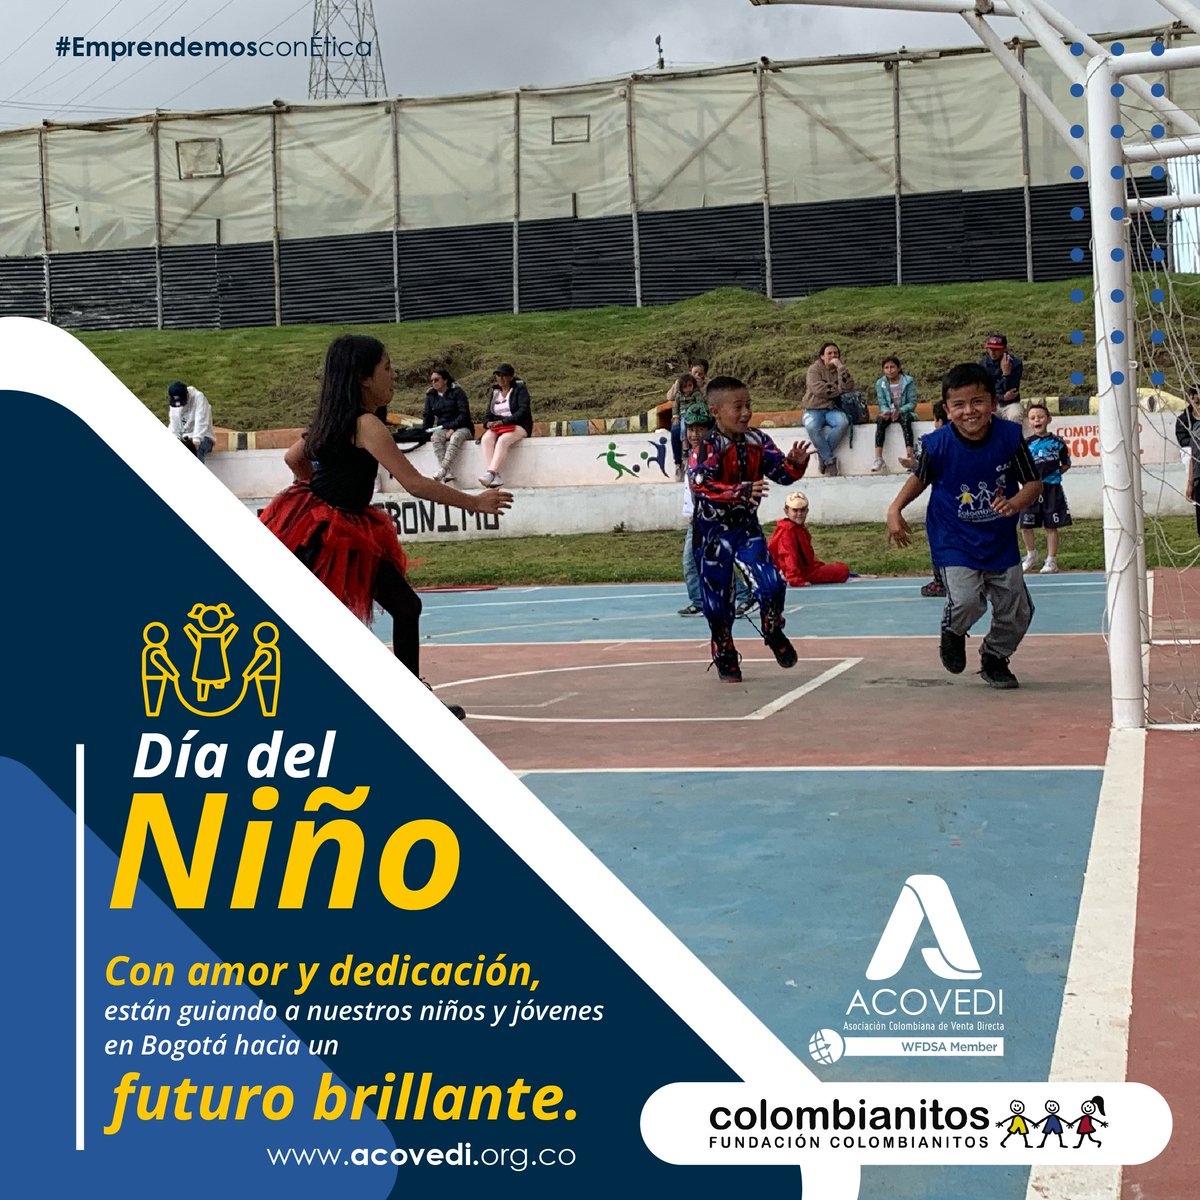 🌟👧👦 Hoy, en el Día del Niño, reconocemos la labor invaluable de nuestros amigos en @colombianitos. Con pasión, paciencia y amor, están moldeando el futuro de nuestros niños y jóvenes en Bogotá. ¡Gracias por su dedicación y compromiso! 🌟👧👦 #DíaDelNiño